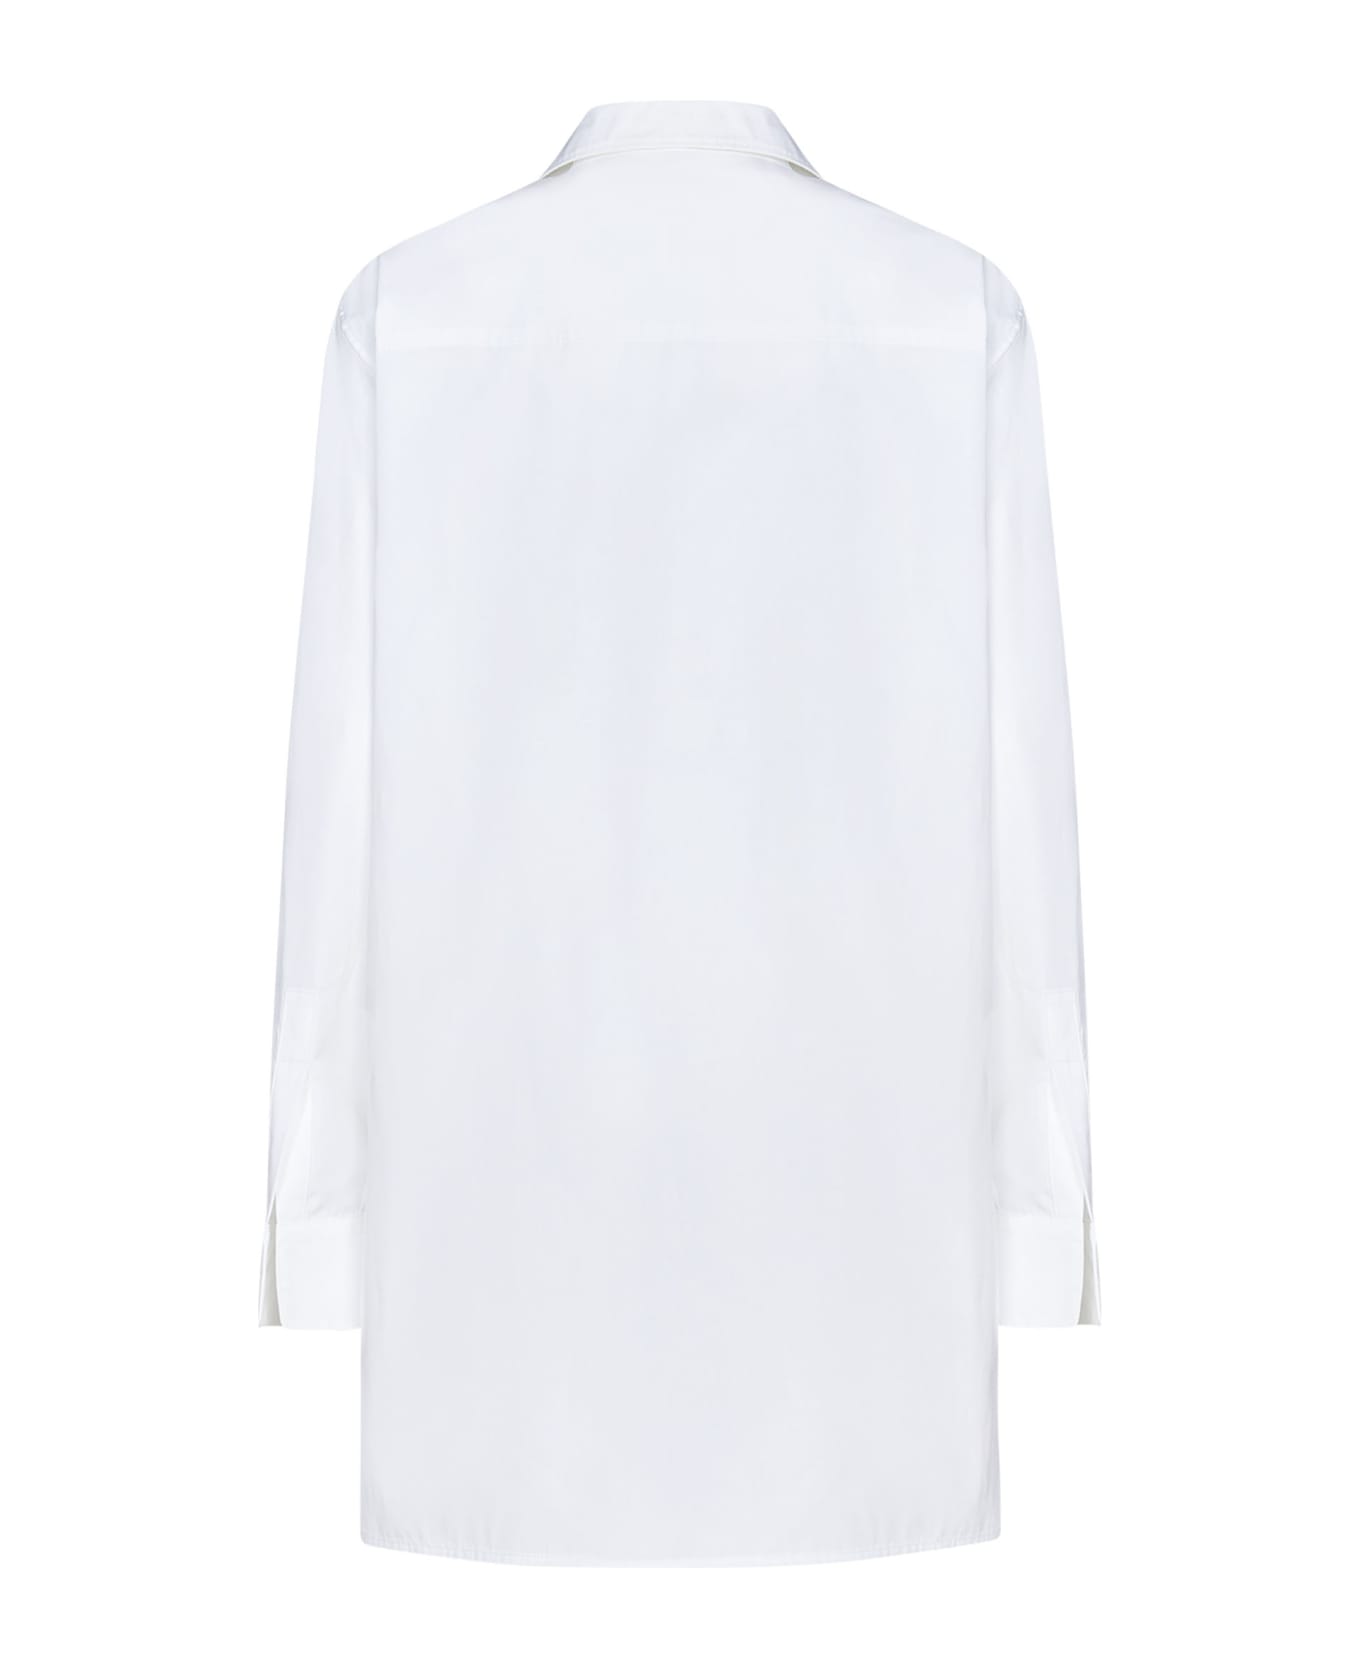 Off-White Poplin Flower Button Shirt - White